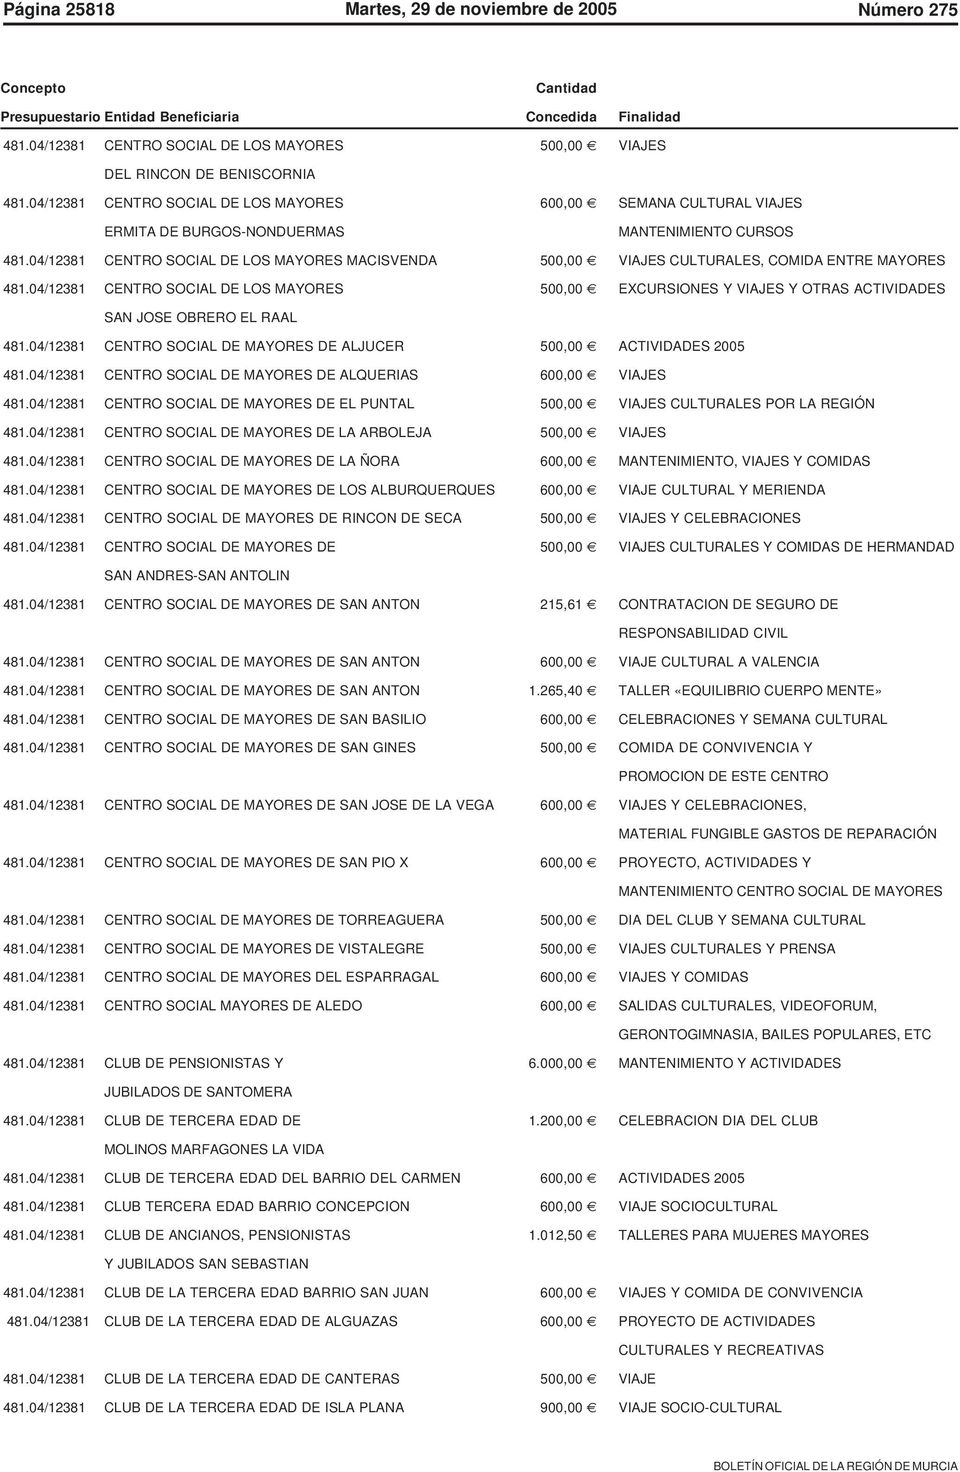 04/12381 CENTRO SOCIAL DE LOS MAYORES MACISVENDA 500,00 VIAJES CULTURALES, COMIDA ENTRE MAYORES 481.